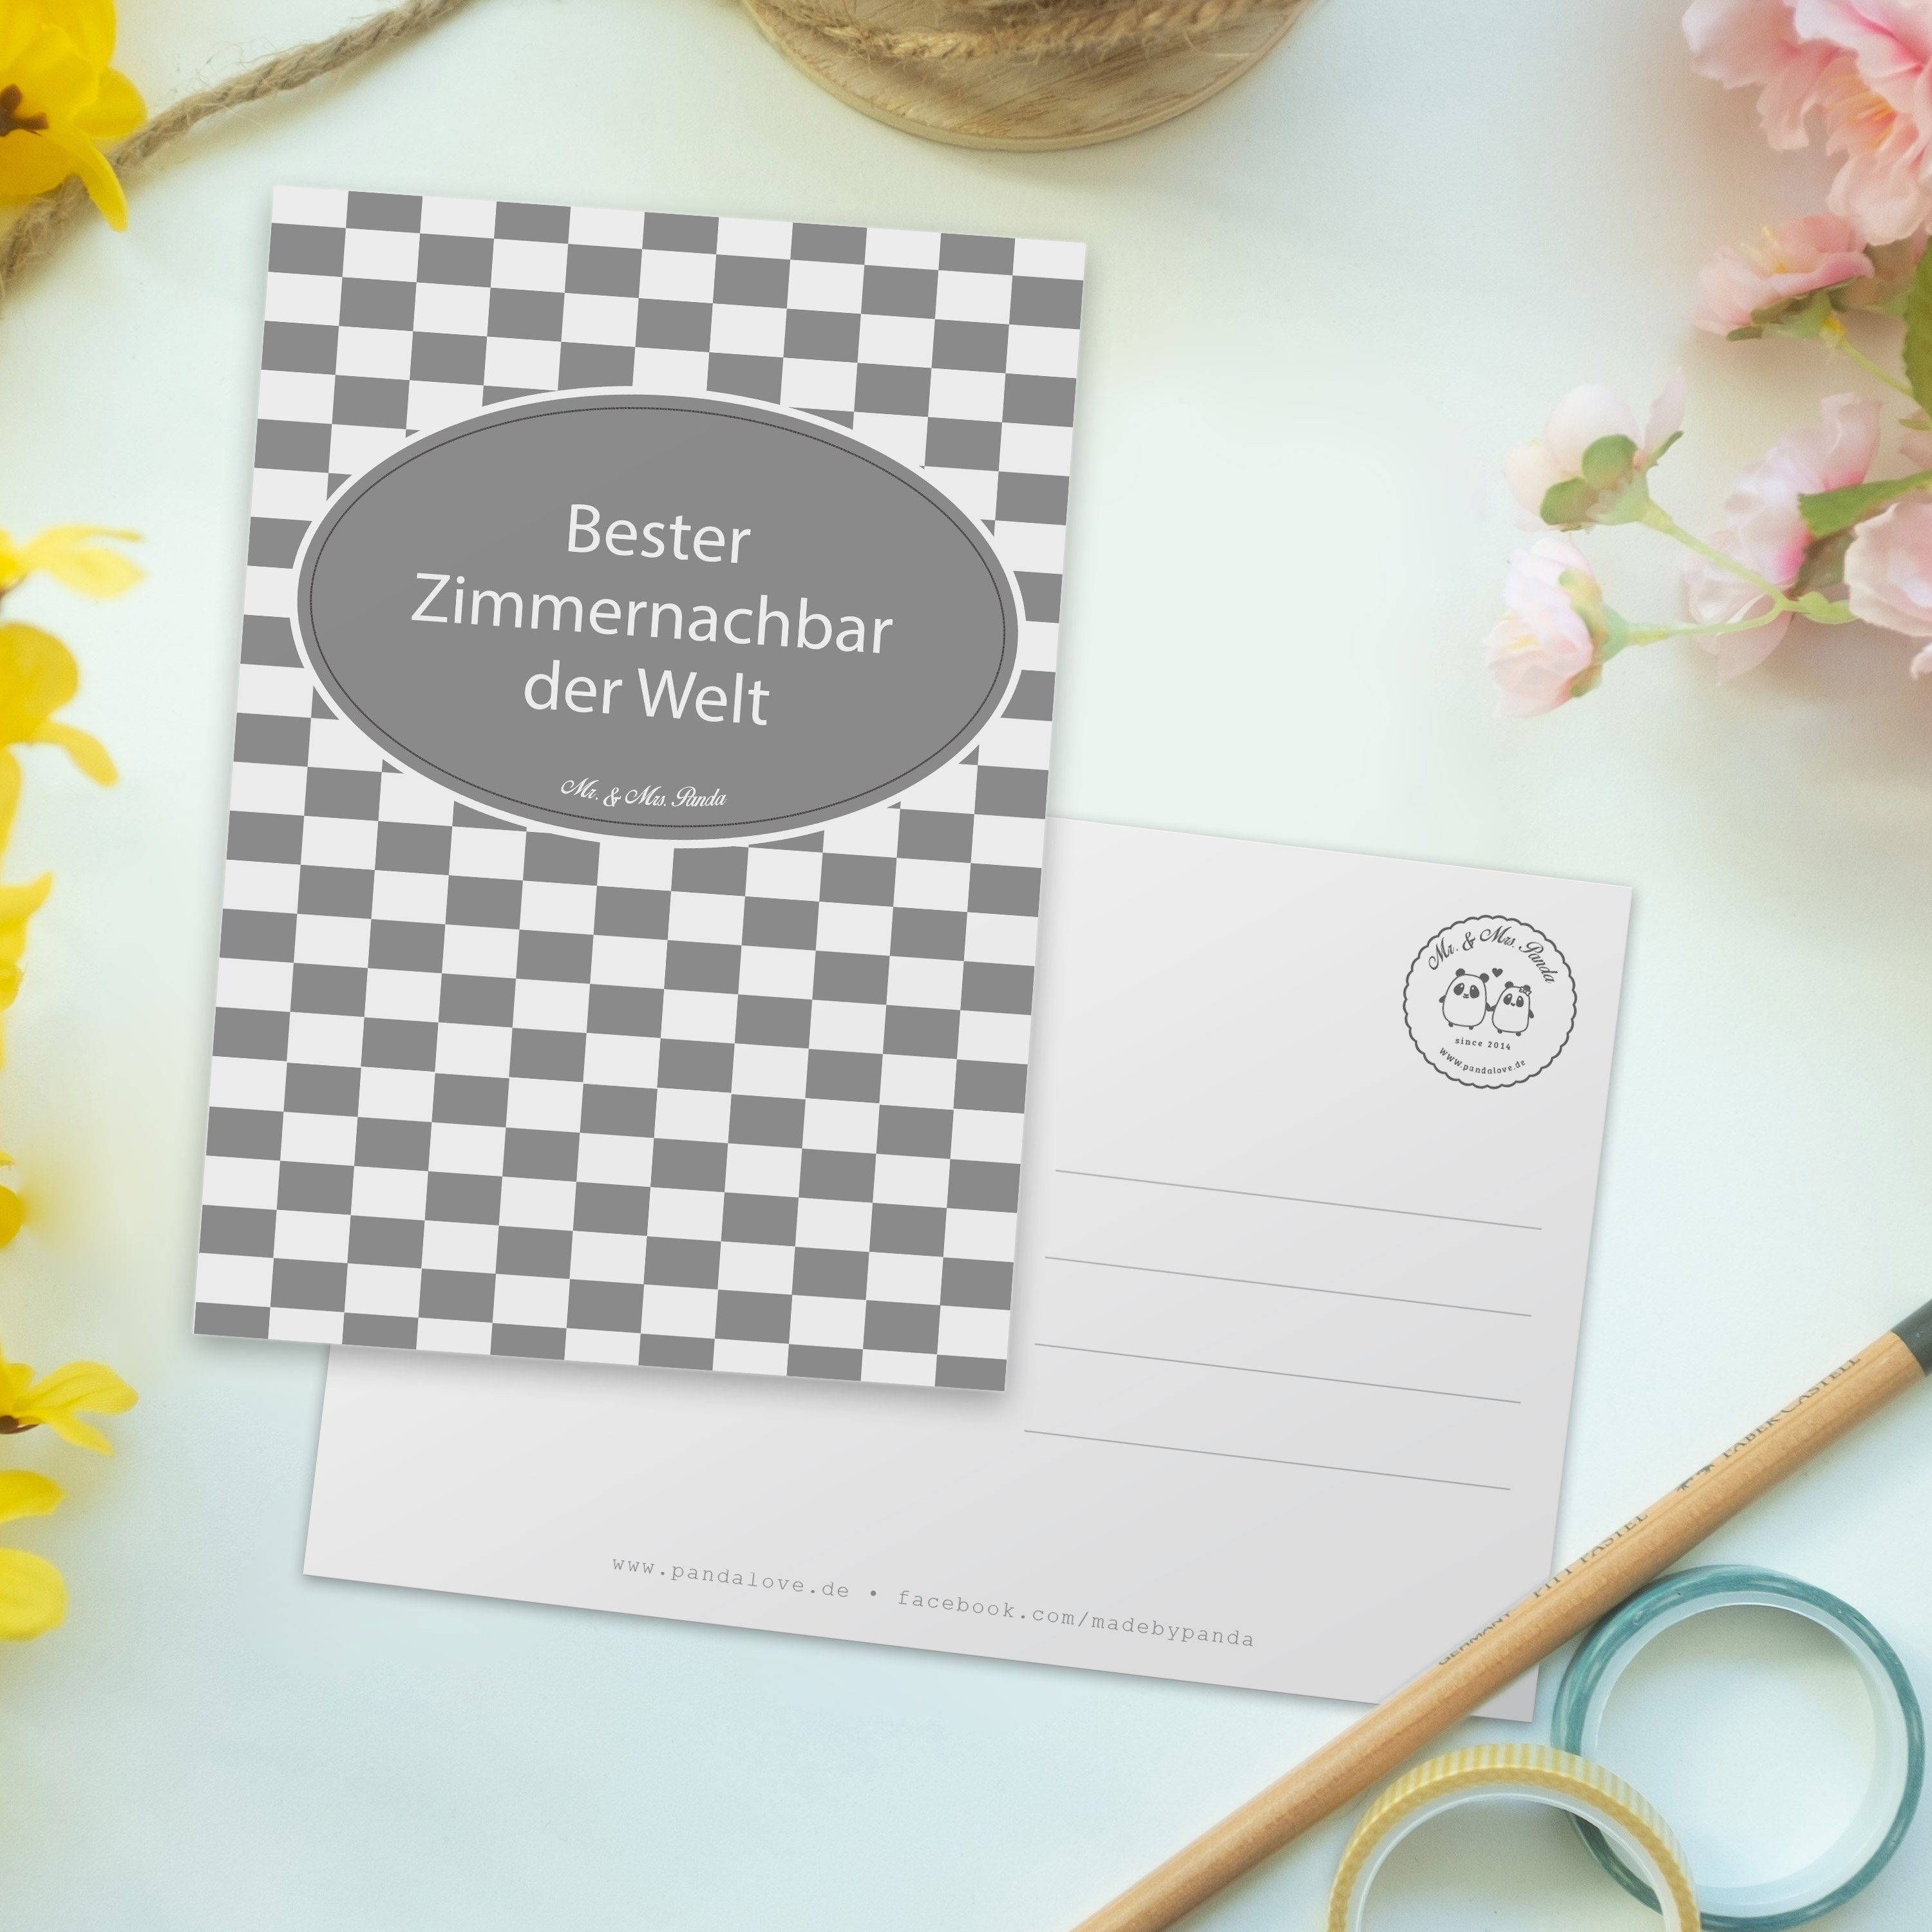 Mr. & Mrs. Panda Postkarte Wohnheim, Zimmernachbar - Geschenk, Studentenwohnheim, Einladungskart